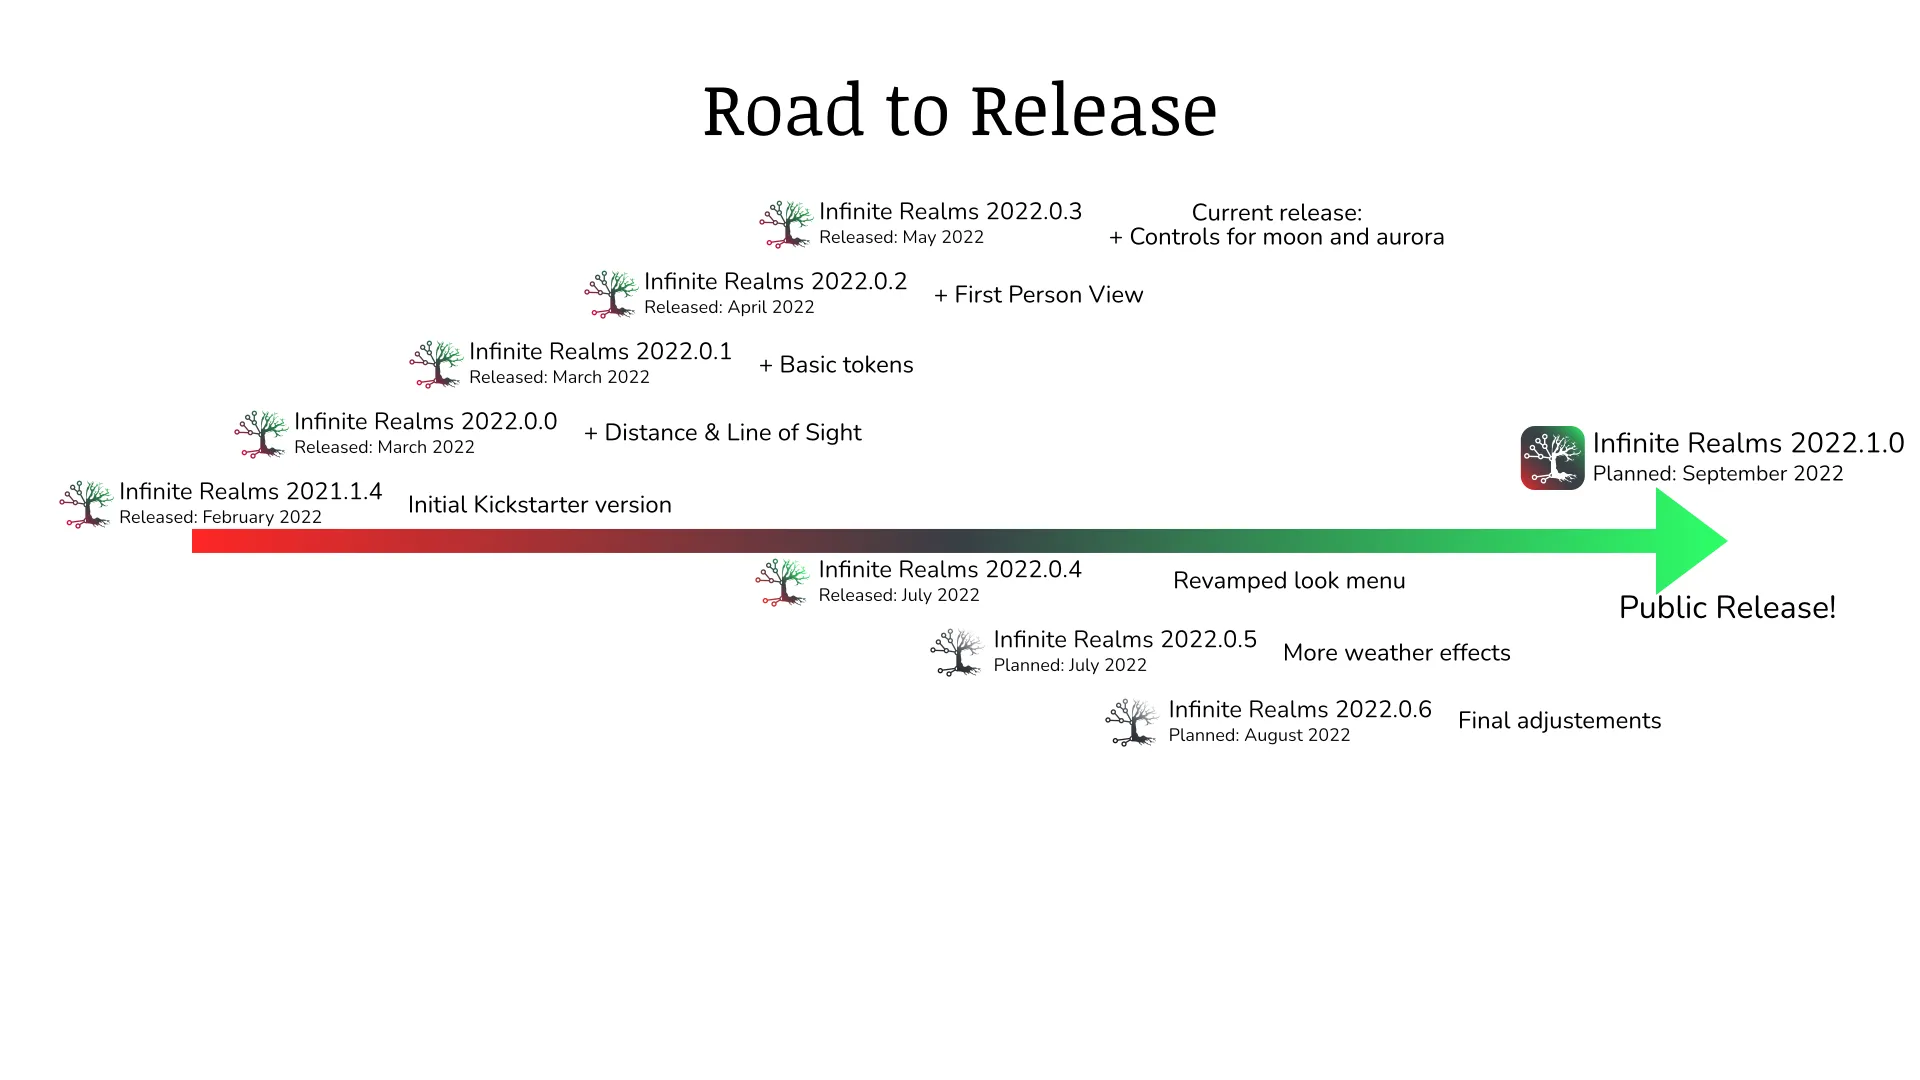 Roadmap to Release July 2022